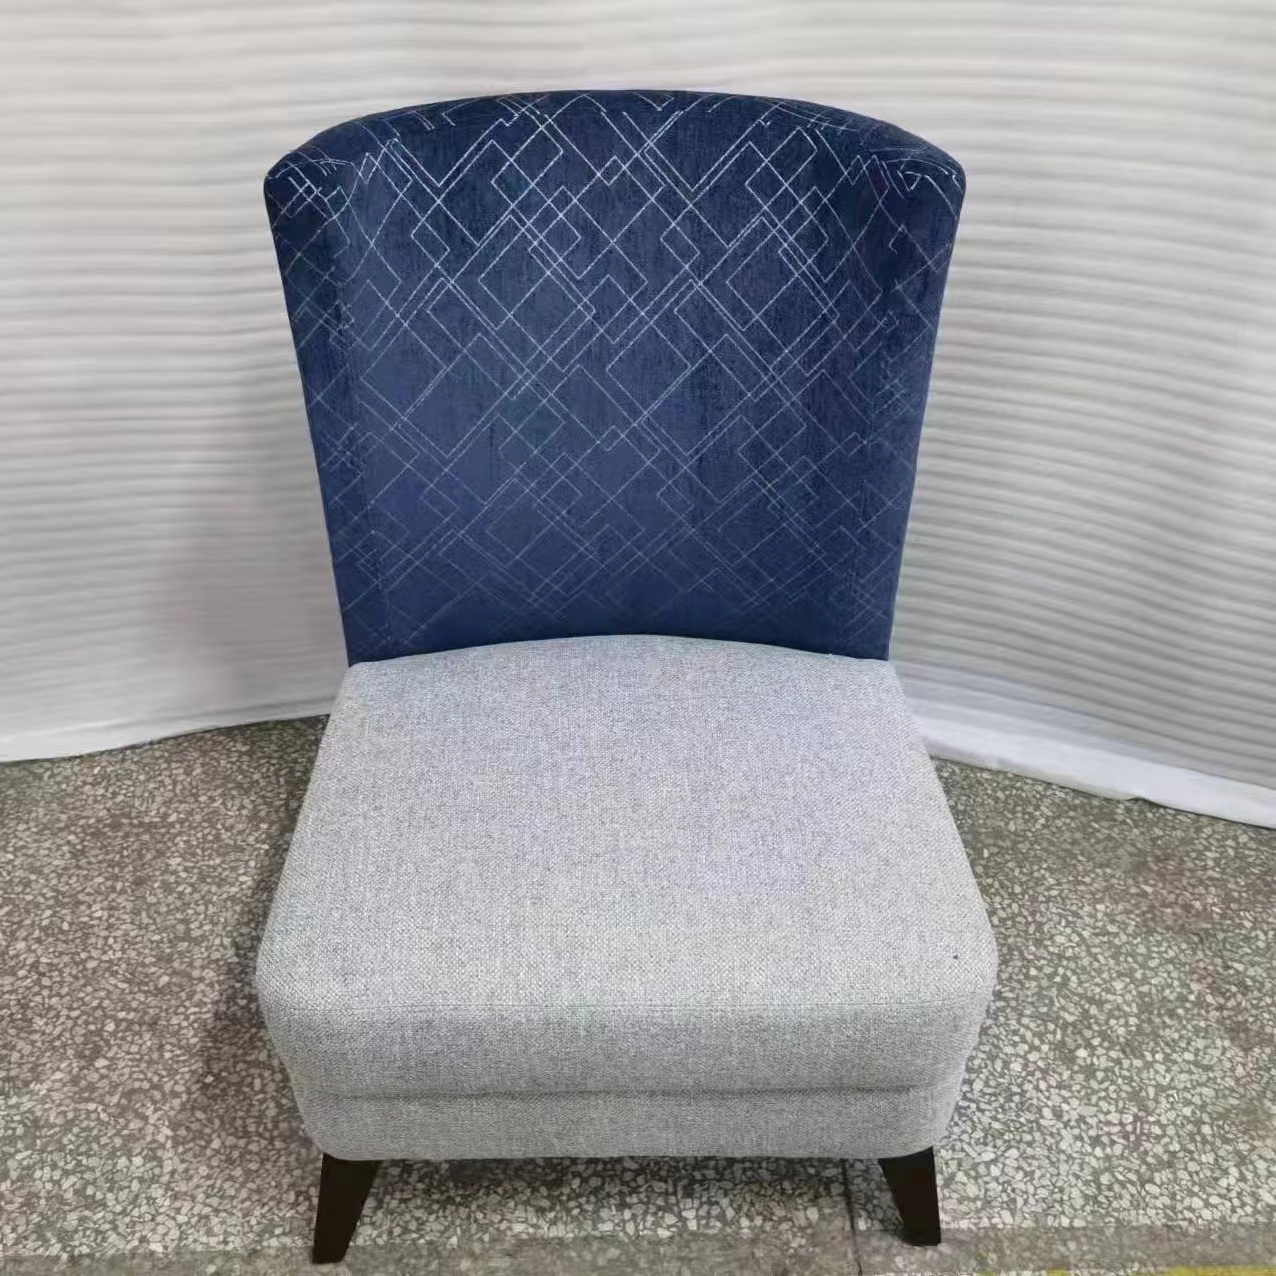 单人椅